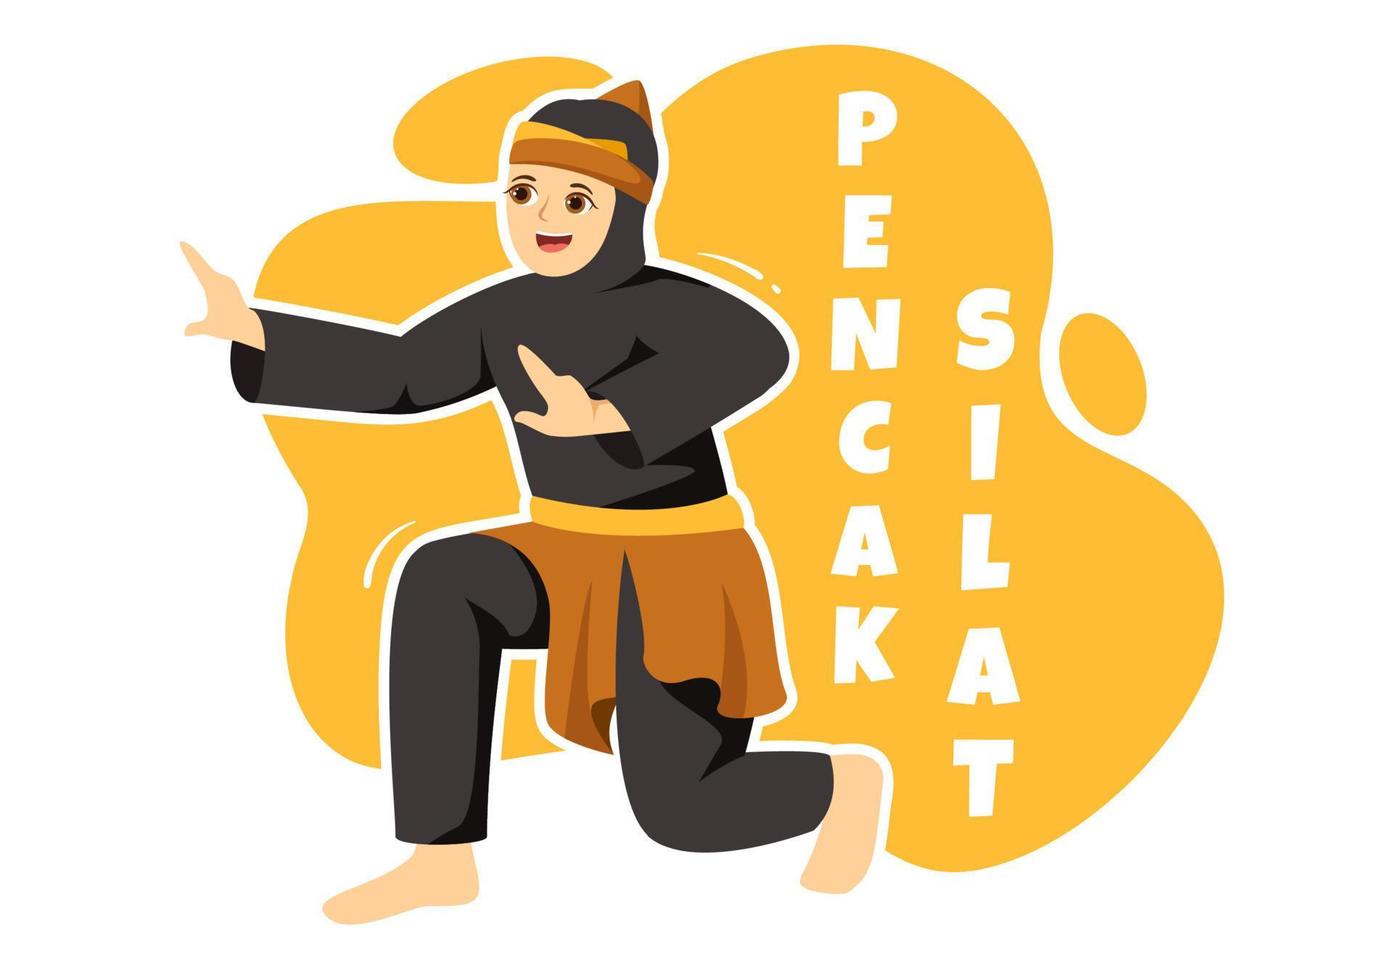 ilustración de pencak silat sport con personas que posan como artista marcial de indonesia para banner web o página de destino en plantillas planas dibujadas a mano de dibujos animados vector